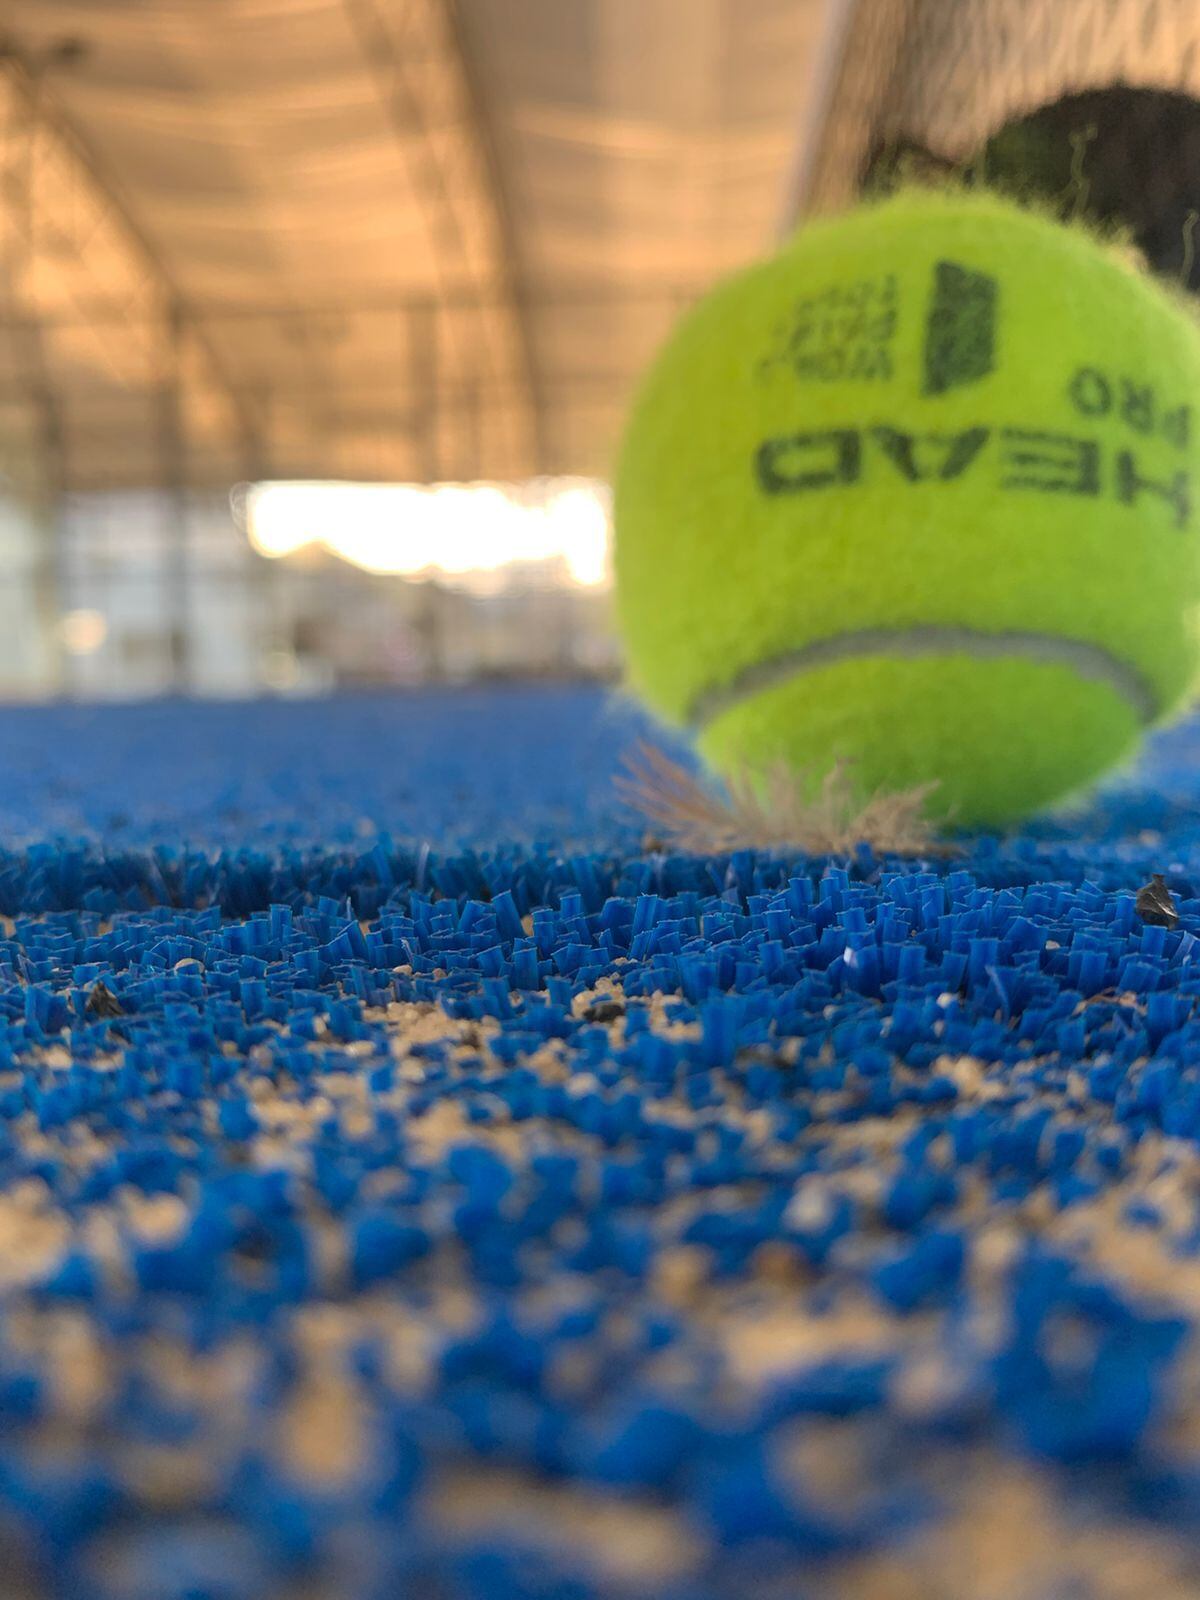 Almacén el Tenista: Artículos para tenis de campo en Colombia.